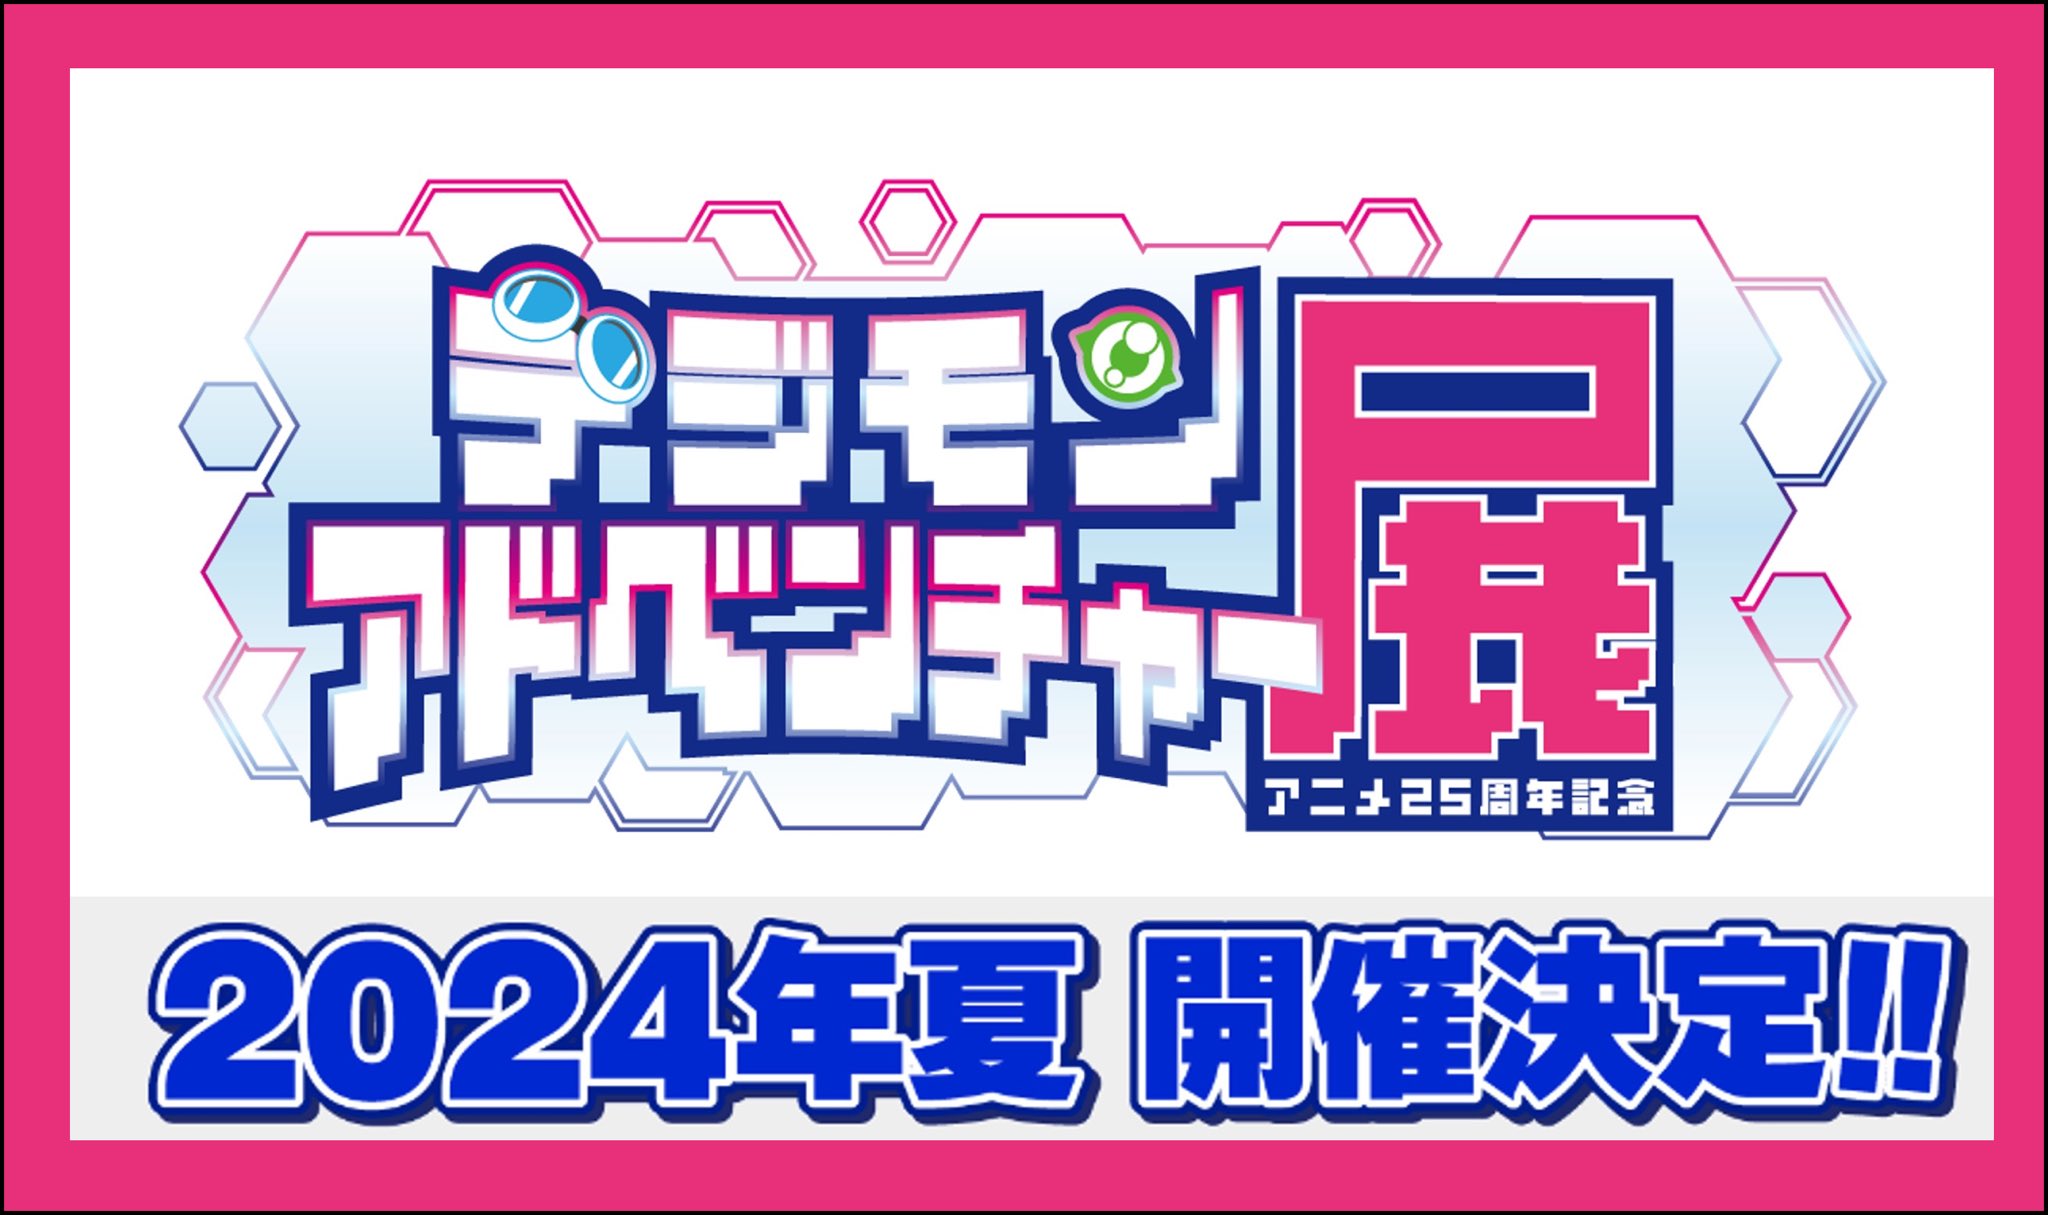 デジモンアドベンチャー アニメ25周年記念展 in 池袋 8月10日より開催!